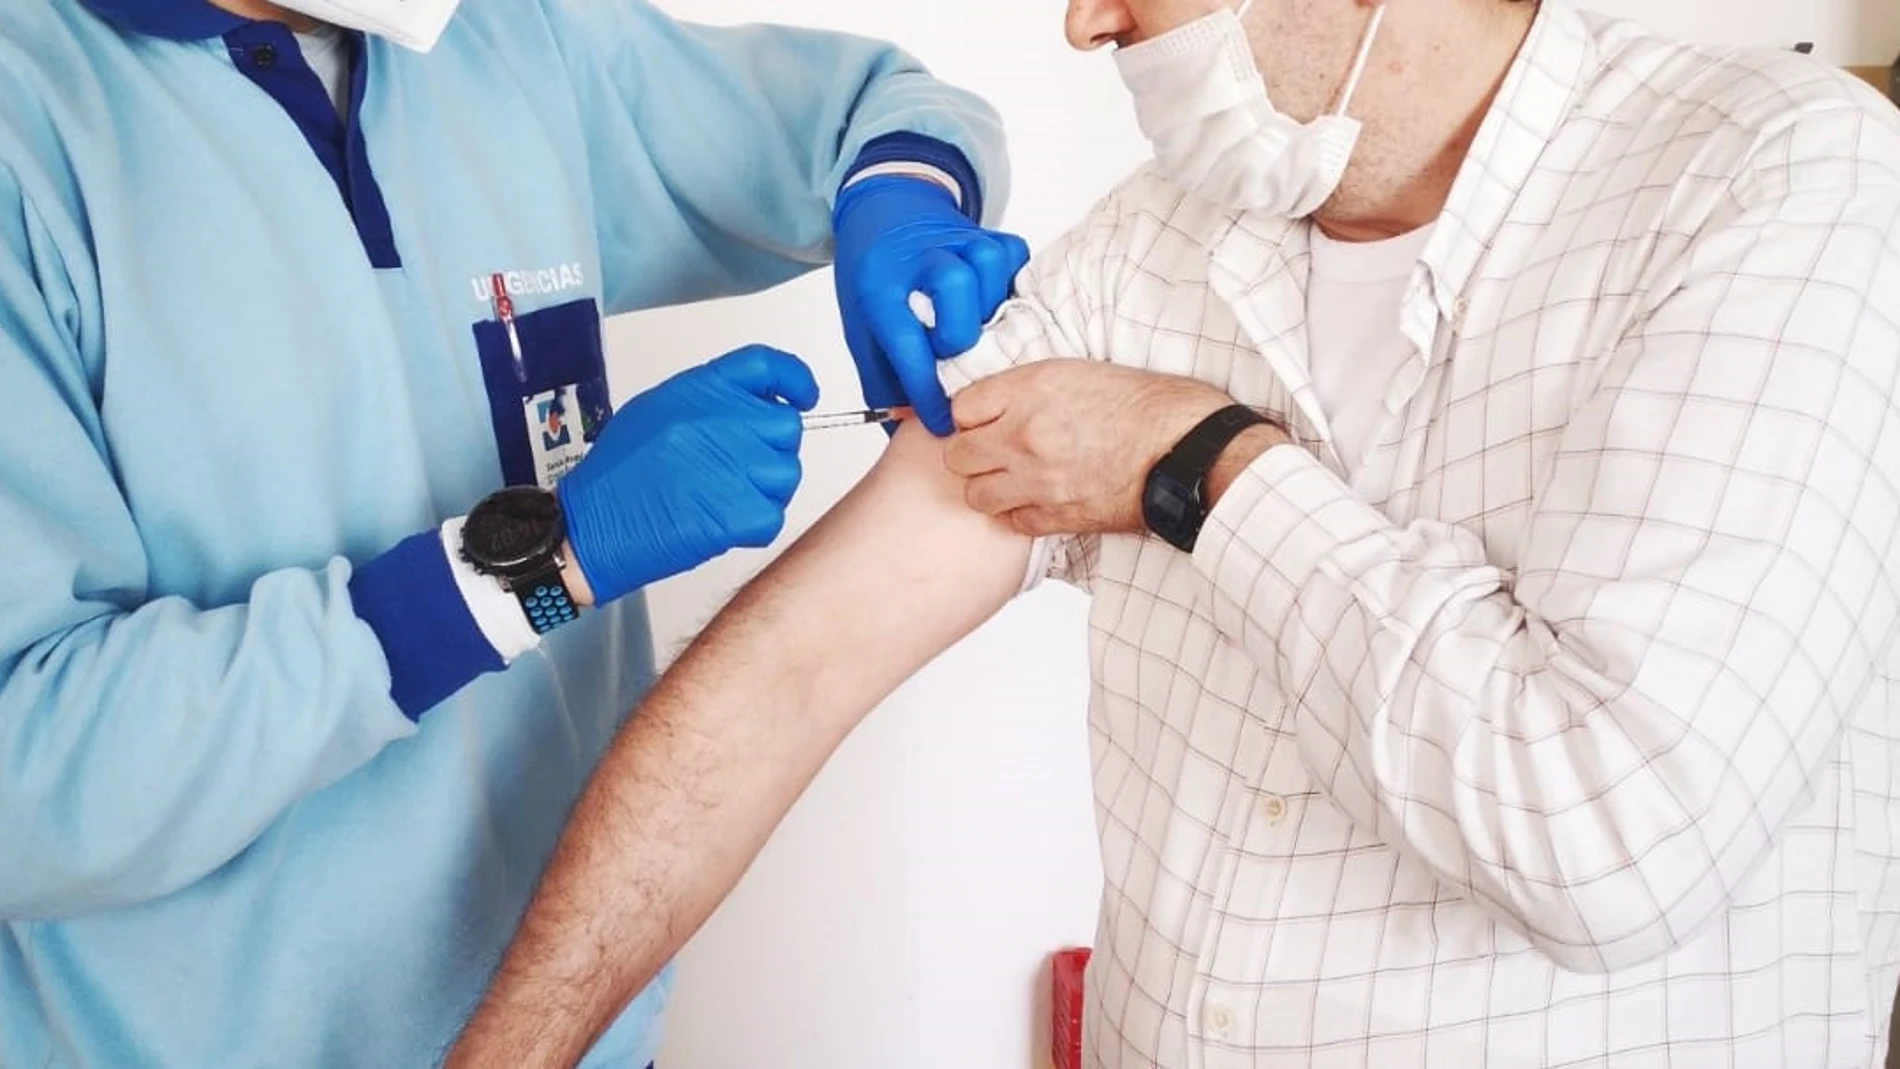 Un profesional sanitario vacuna a una persona.